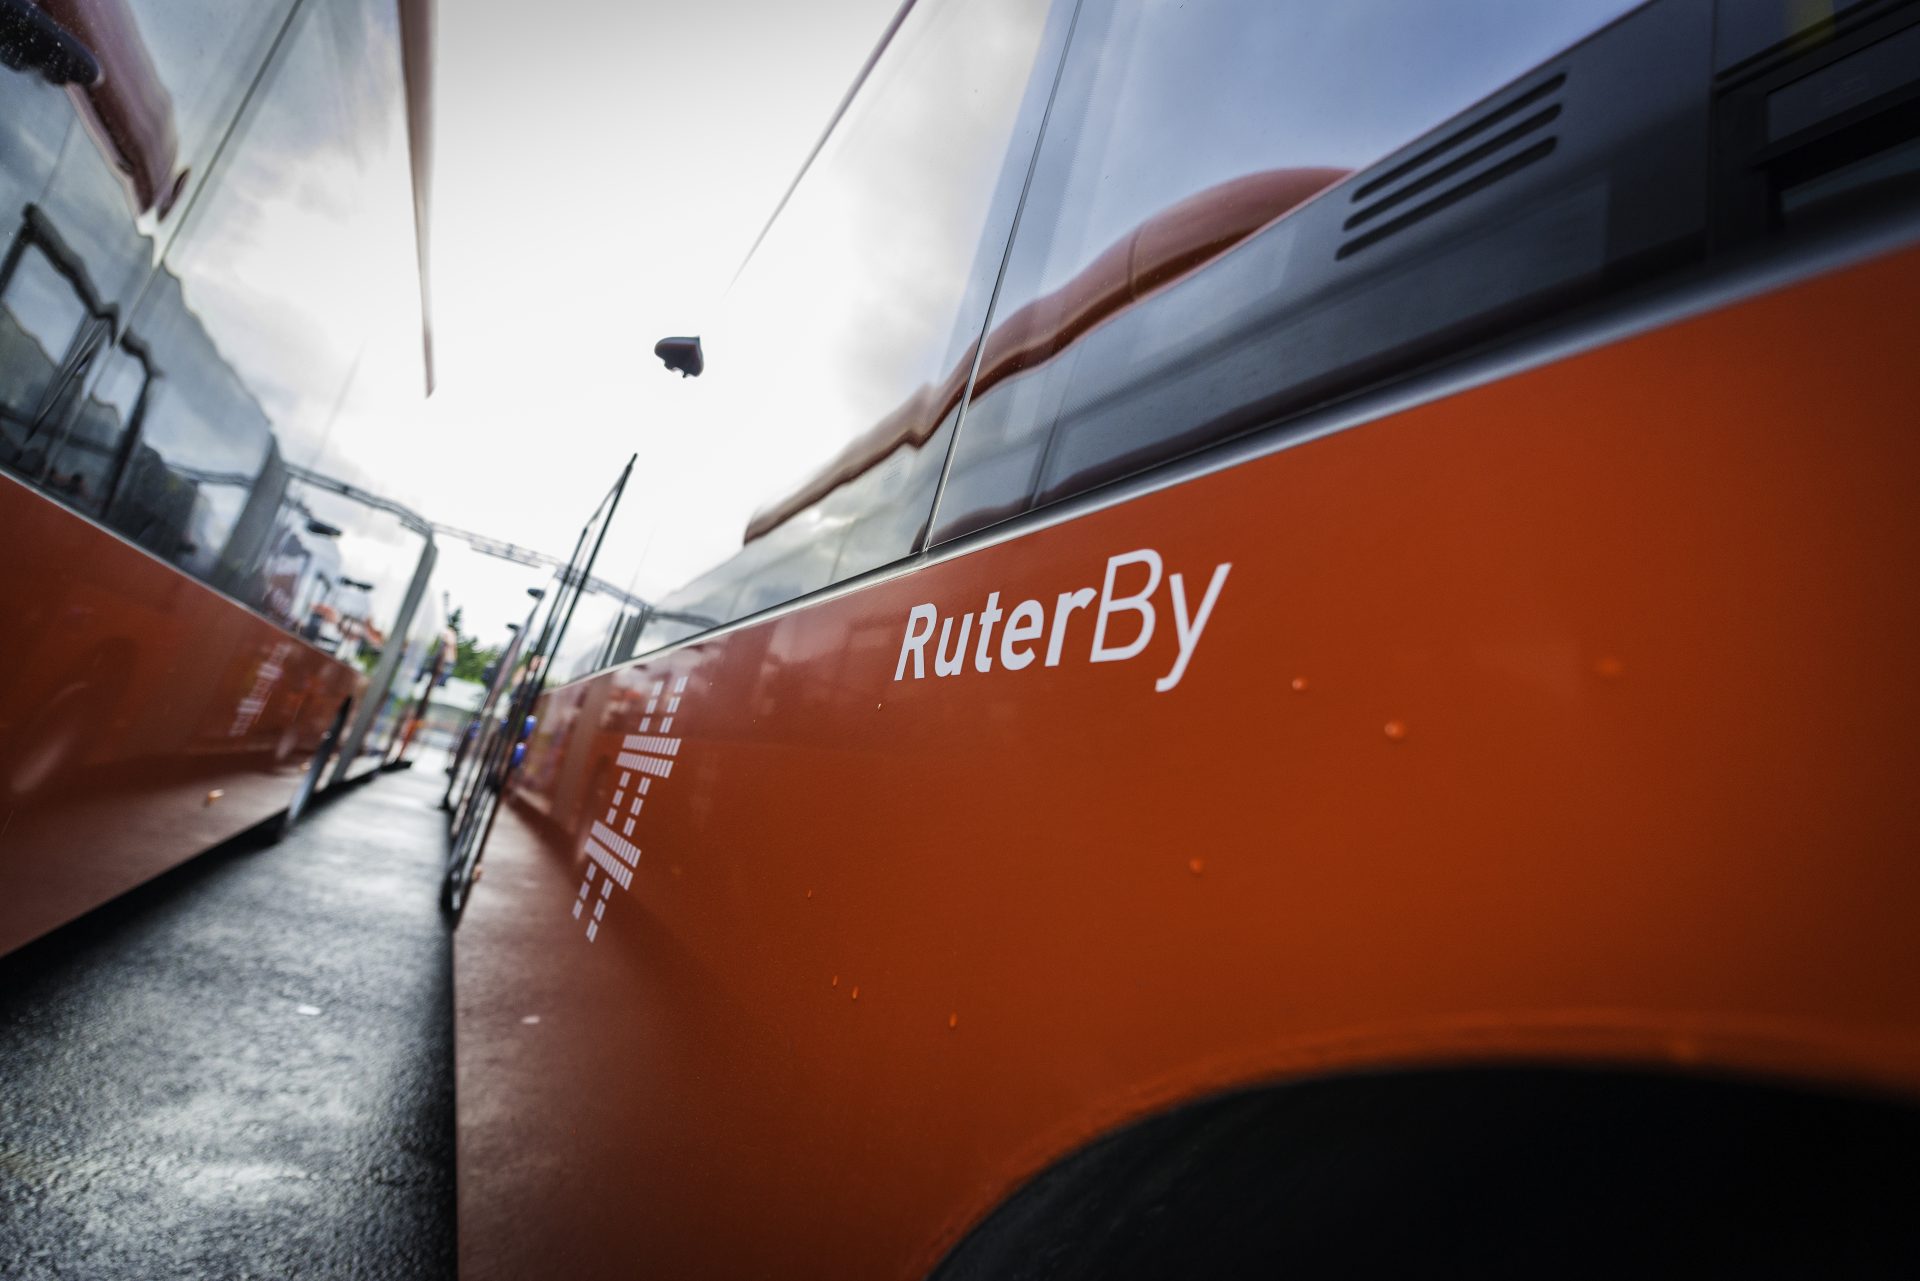 Oransje bybuss med logoen «ruterby» synlig, parkert på en gate under overskyet himmel, reflektert på overflaten til en annen buss.